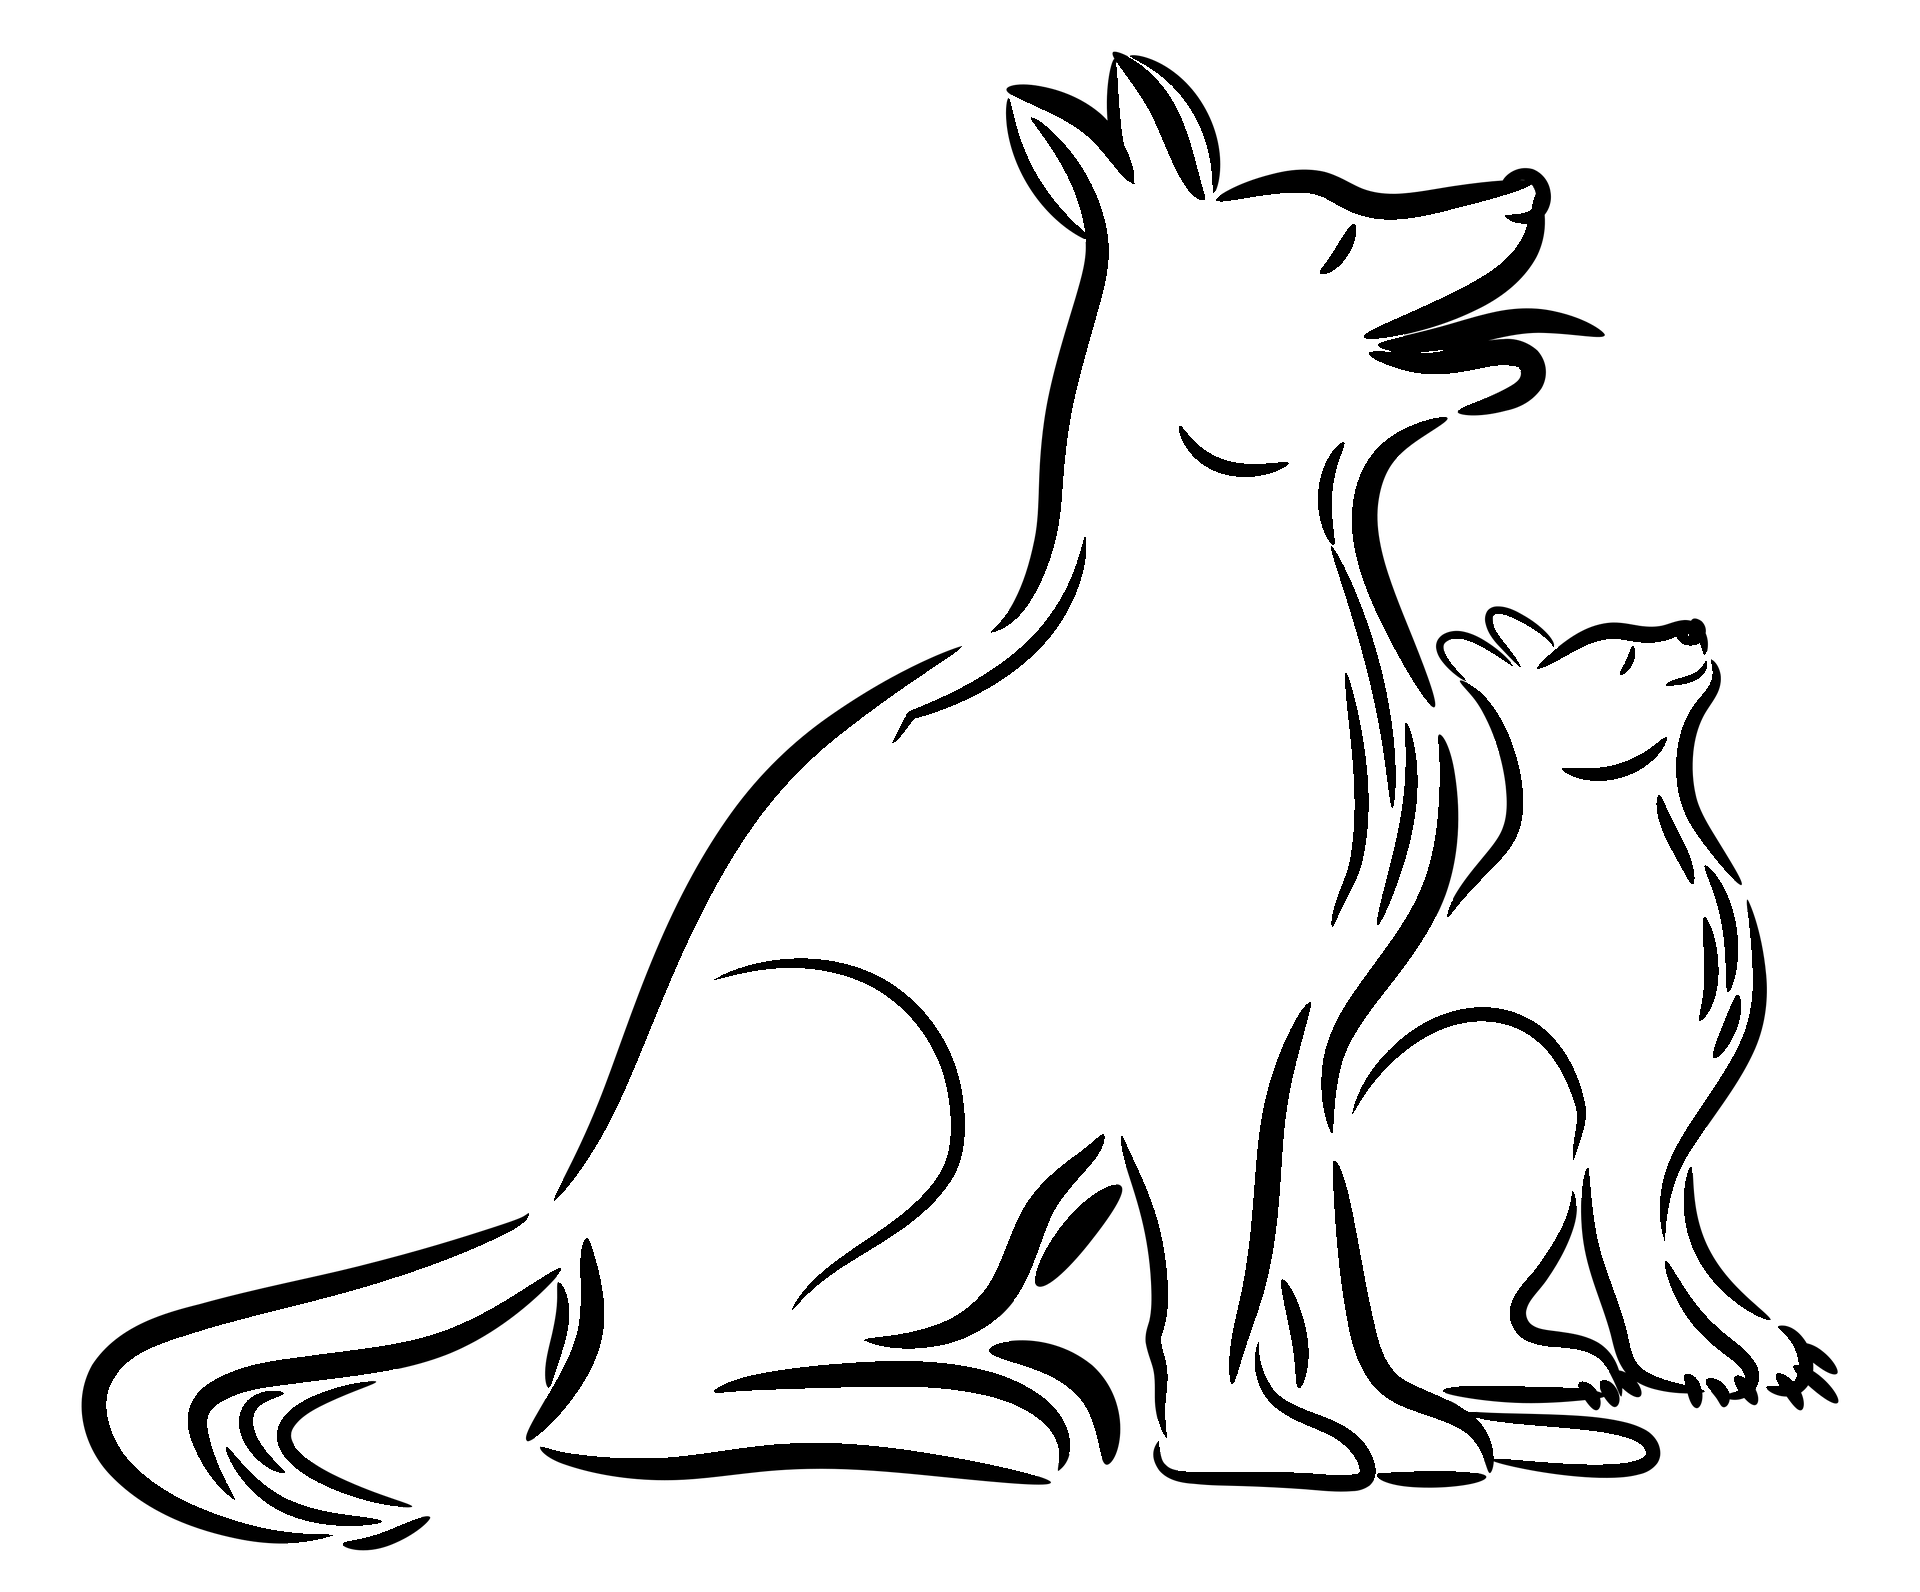 Página para colorear de gato y perro estilizados de perfil